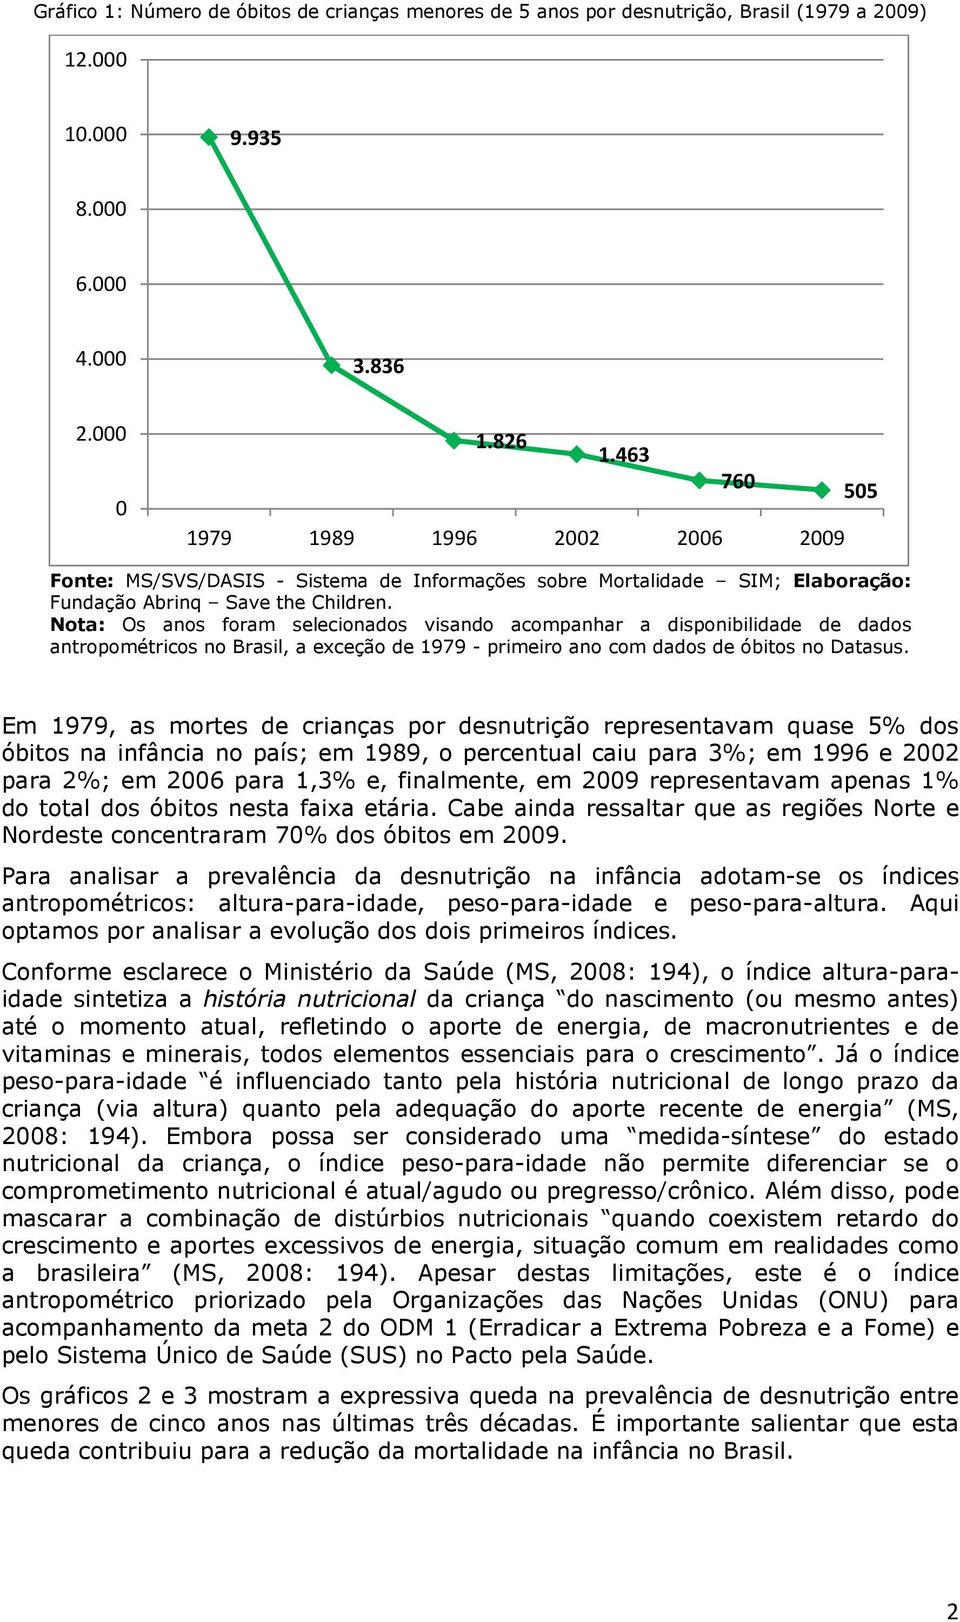 Nota: Os anos foram selecionados visando acompanhar a disponibilidade de dados antropométricos no Brasil, a exceção de 1979 - primeiro ano com dados de óbitos no Datasus.